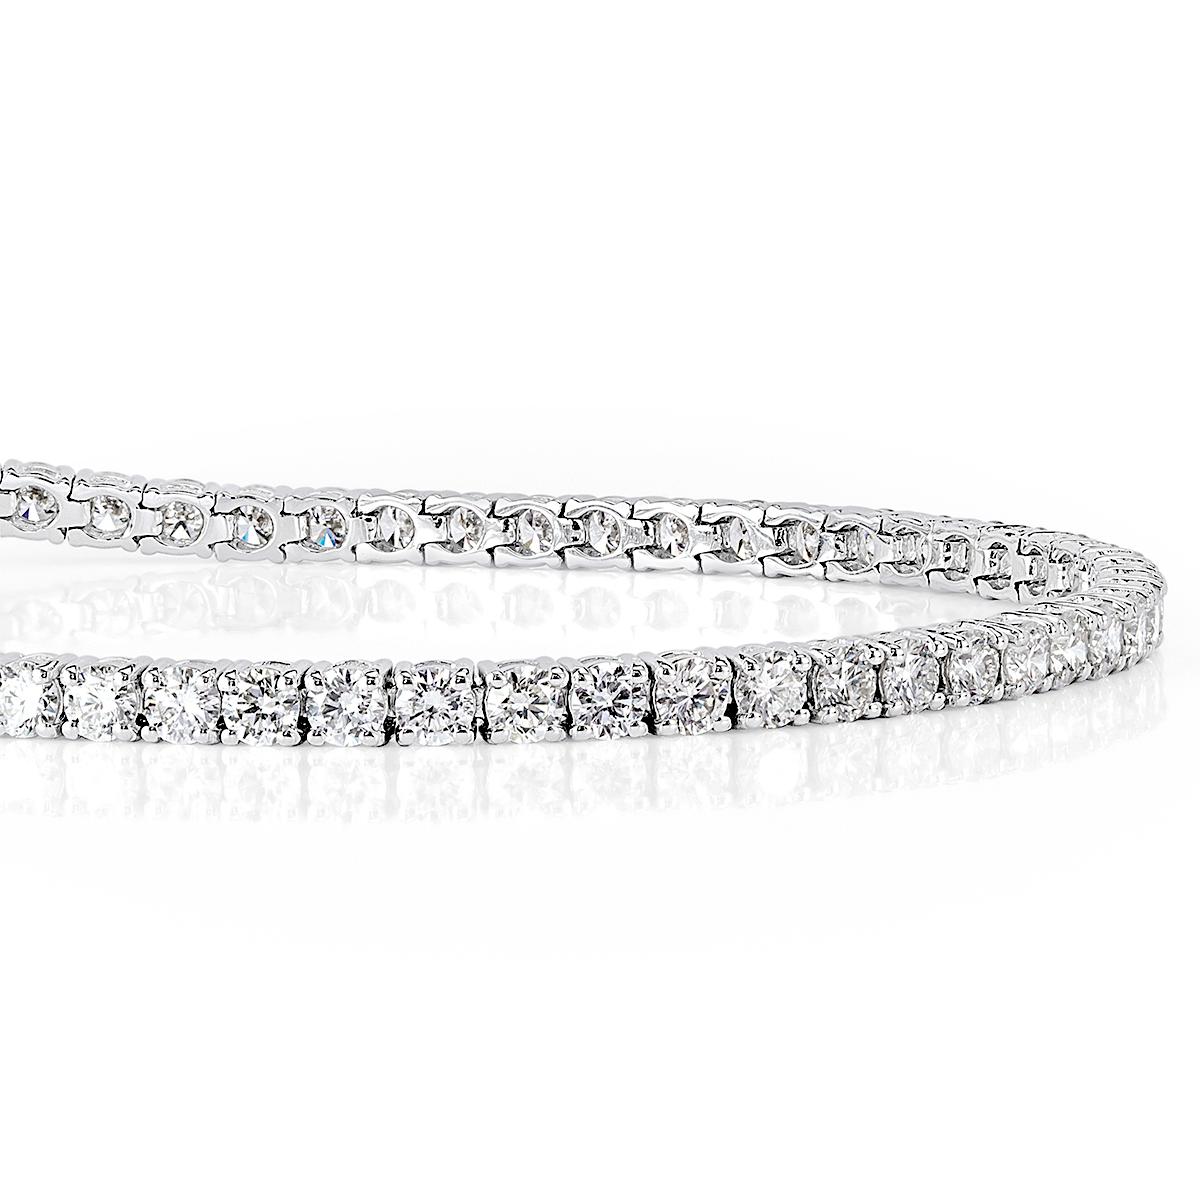 Ce bracelet tennis classique en diamants présente 4,35 ct de diamants ronds de taille brillante sertis dans un cadre classique en or blanc 14k à quatre griffes. Les diamants sont d'un blanc immaculé et sont absolument propres à l'œil. Il est doté